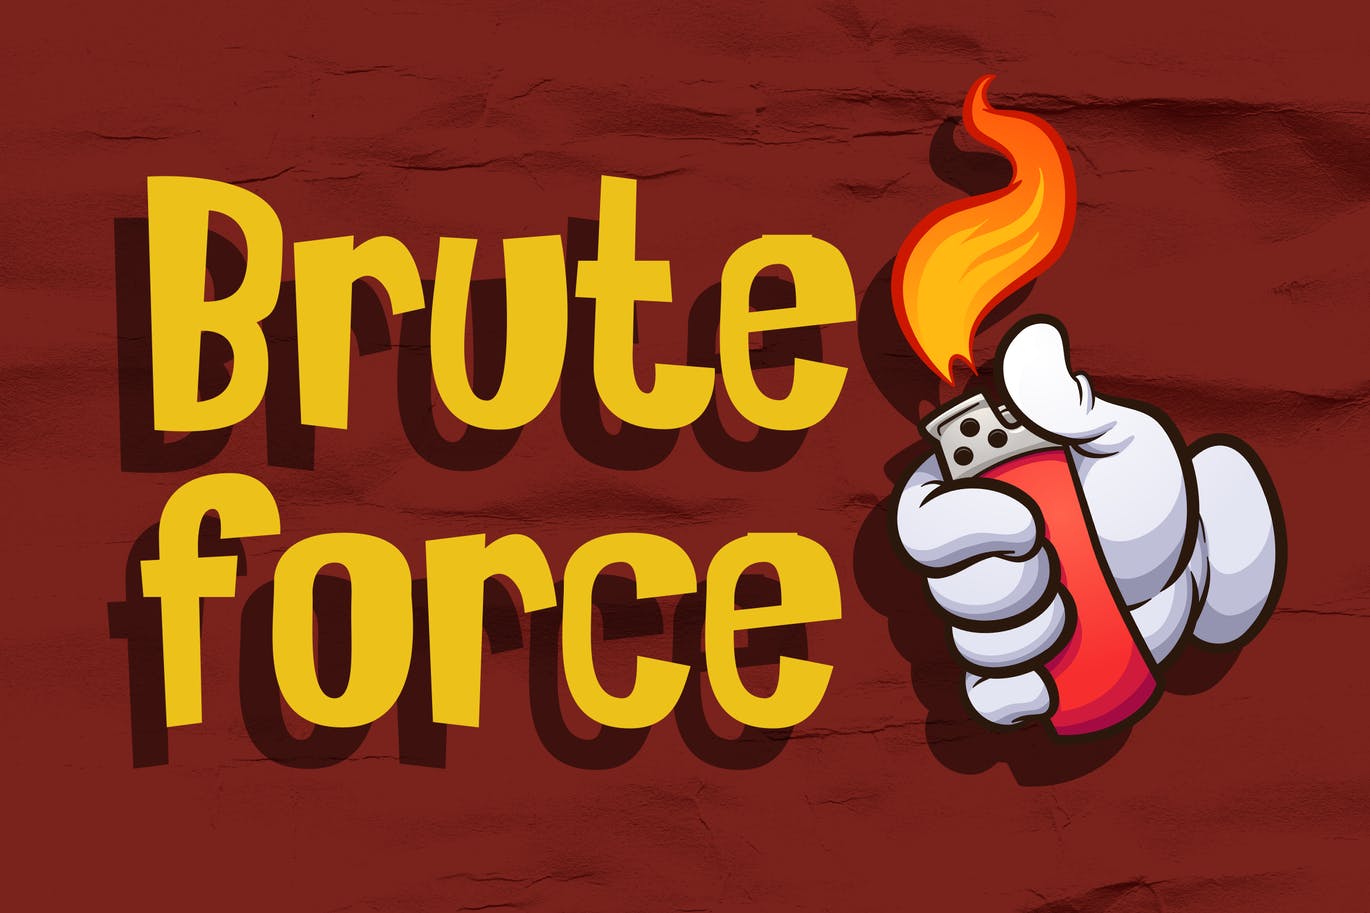 漫画动画无衬线字体素材 Bruteforce – Comic Display Font 设计素材 第1张